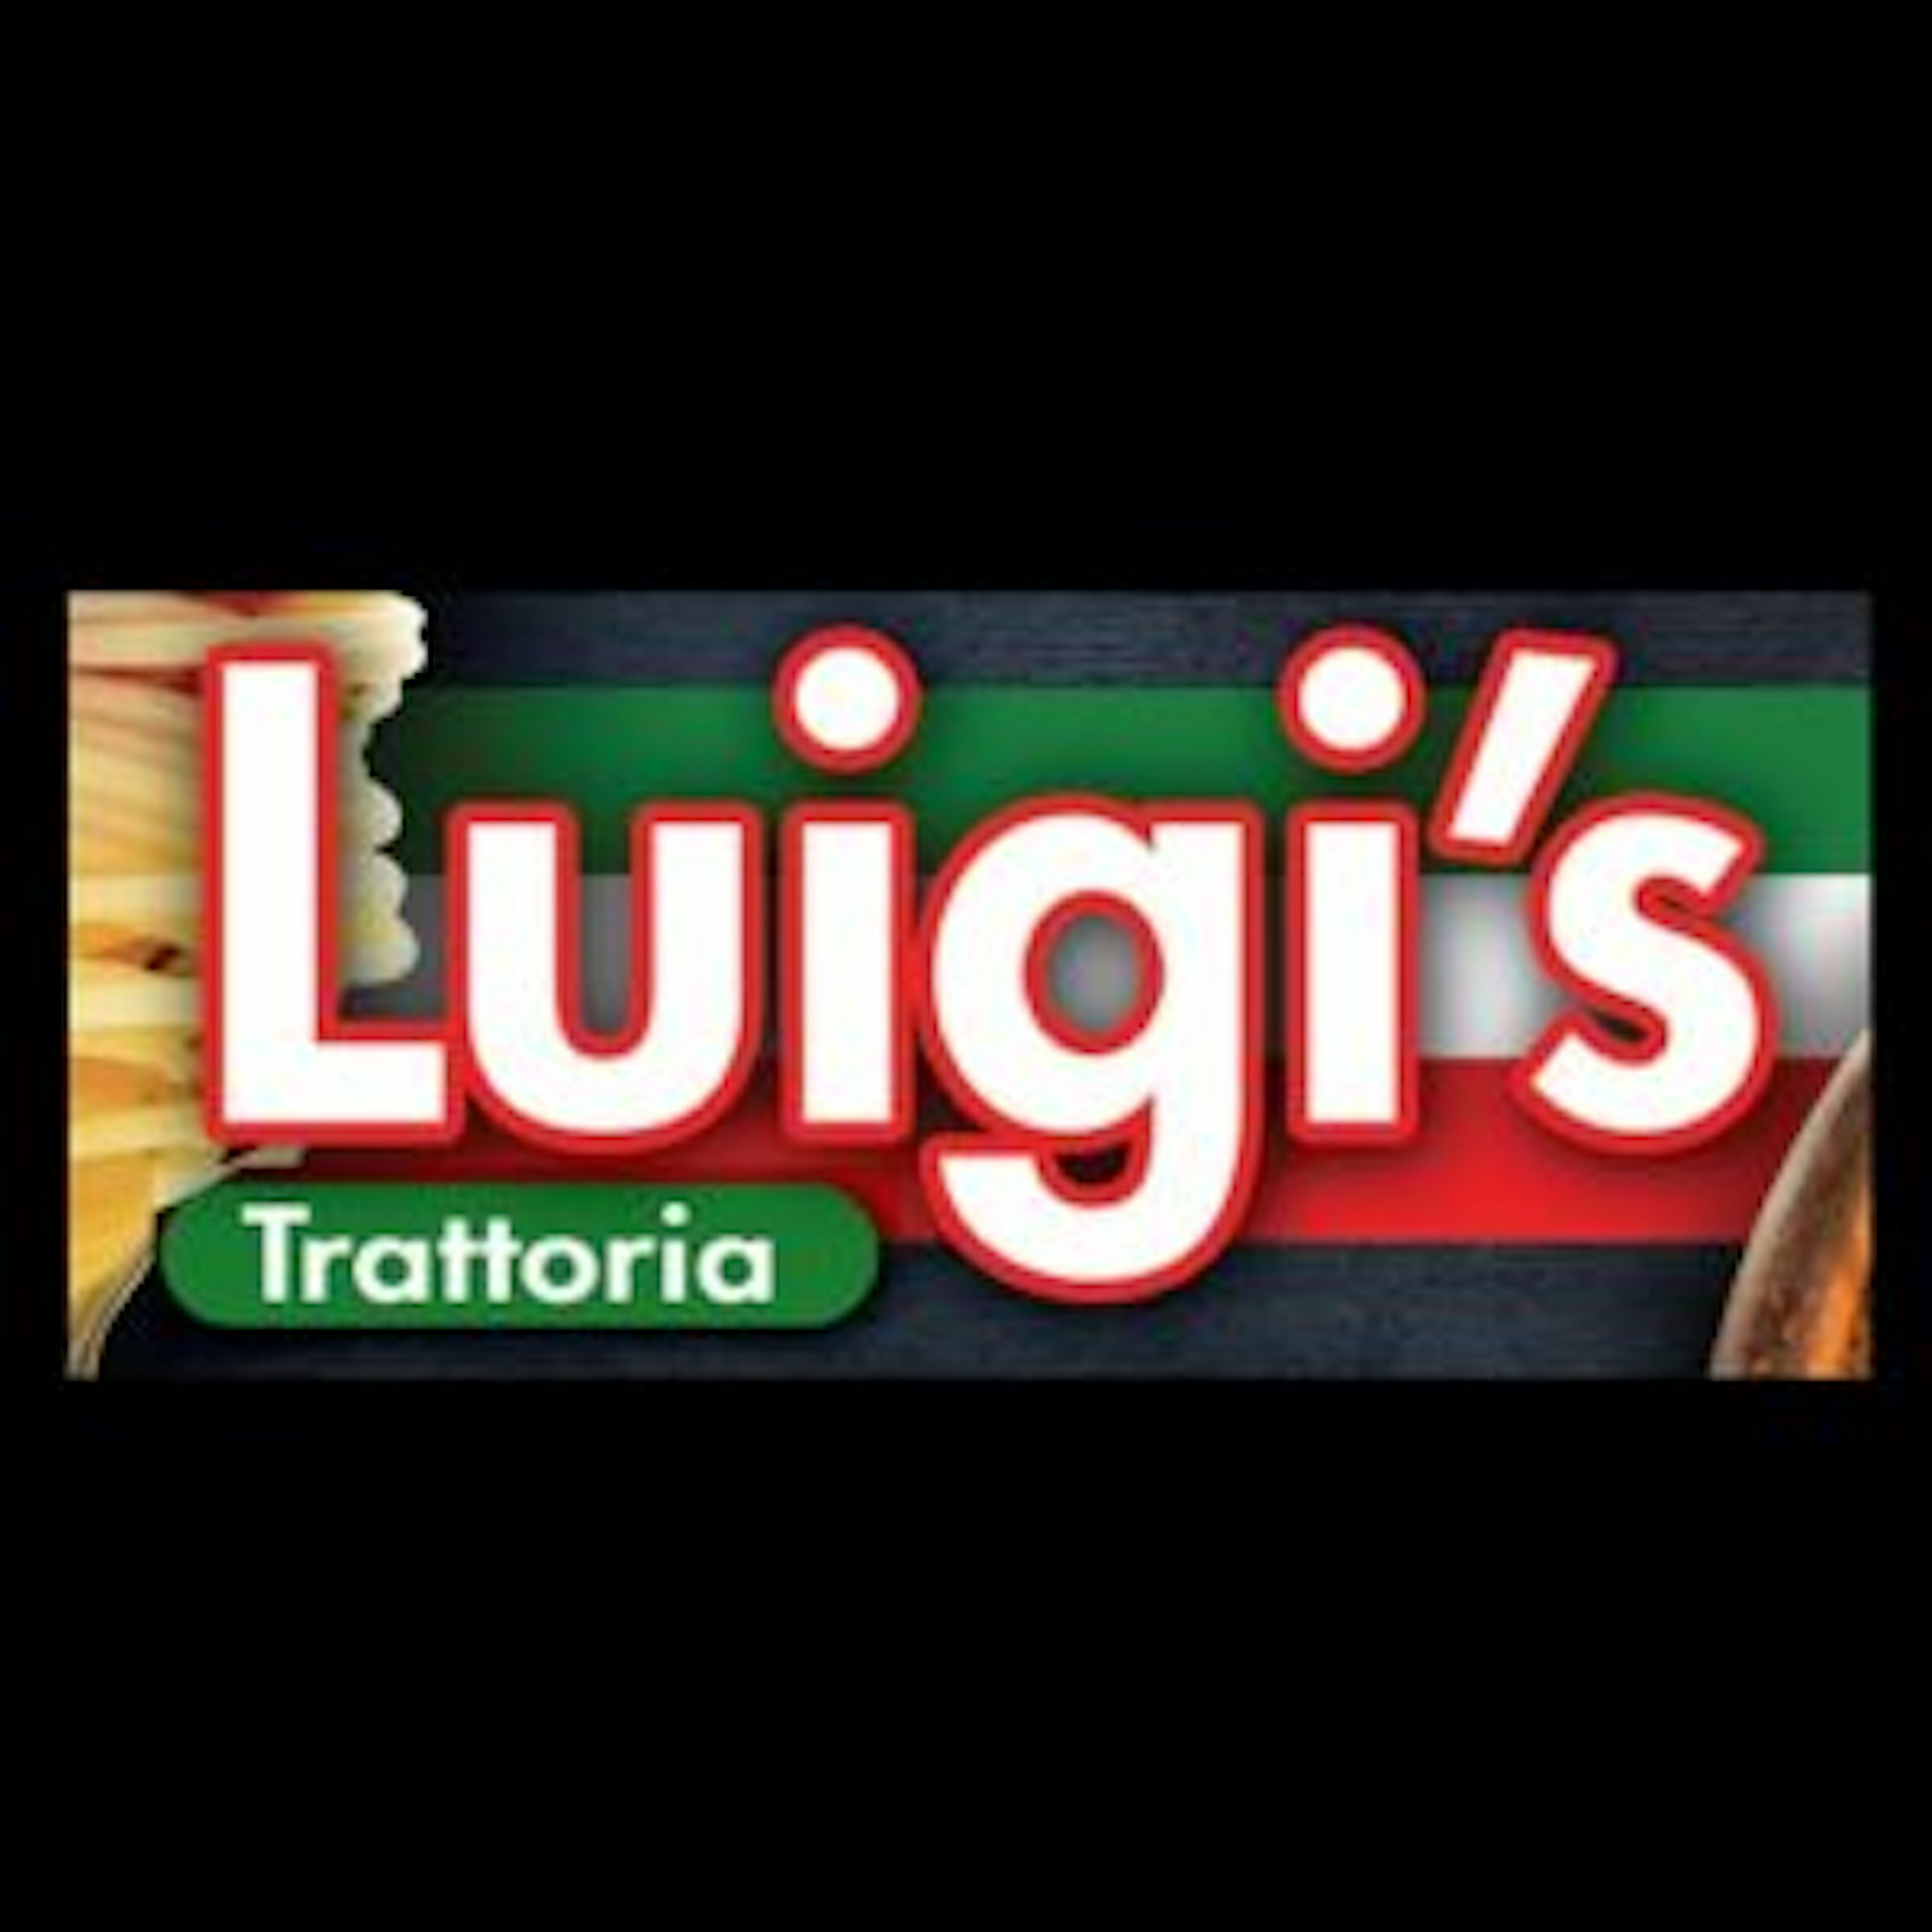 Luigi’s Trattoria